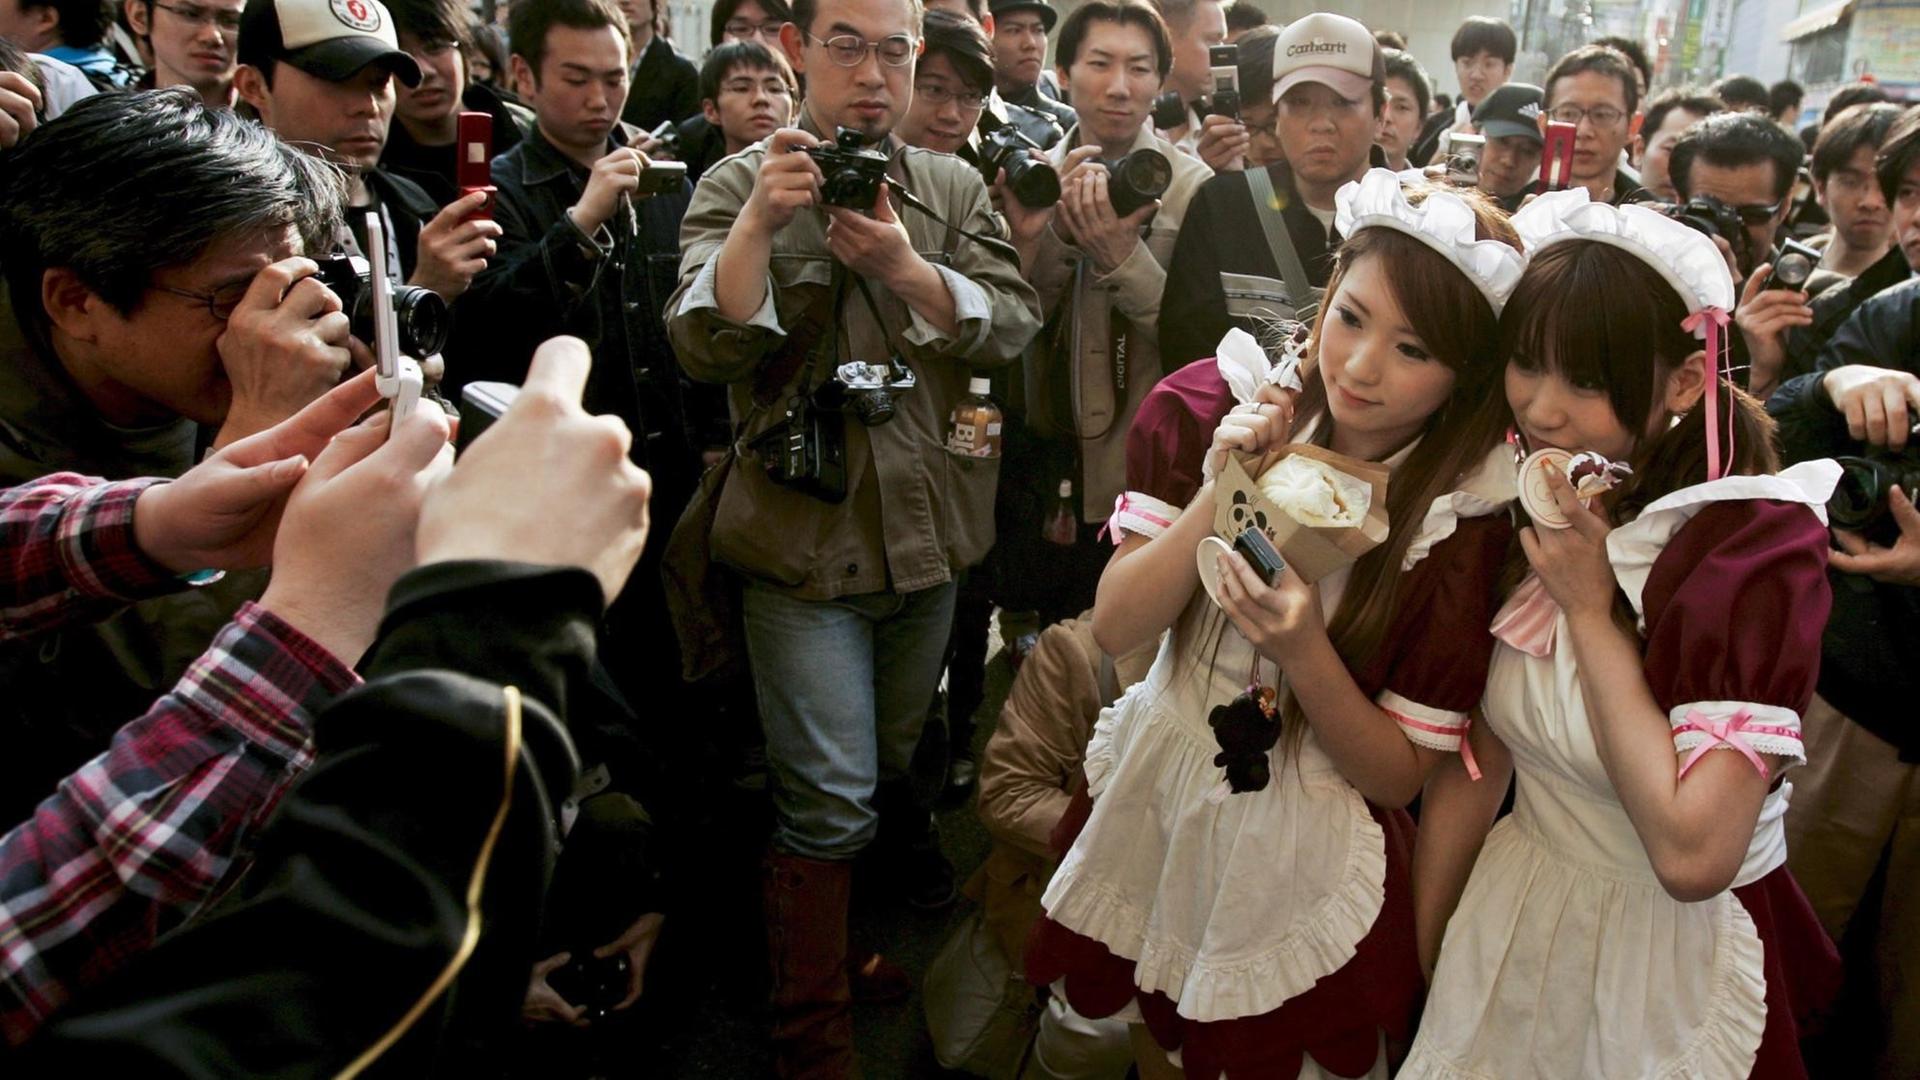 Zwei junge Japanerinnen, verkleidet als Anime-Charaktere, werden von Fans und Fotografen umringt.